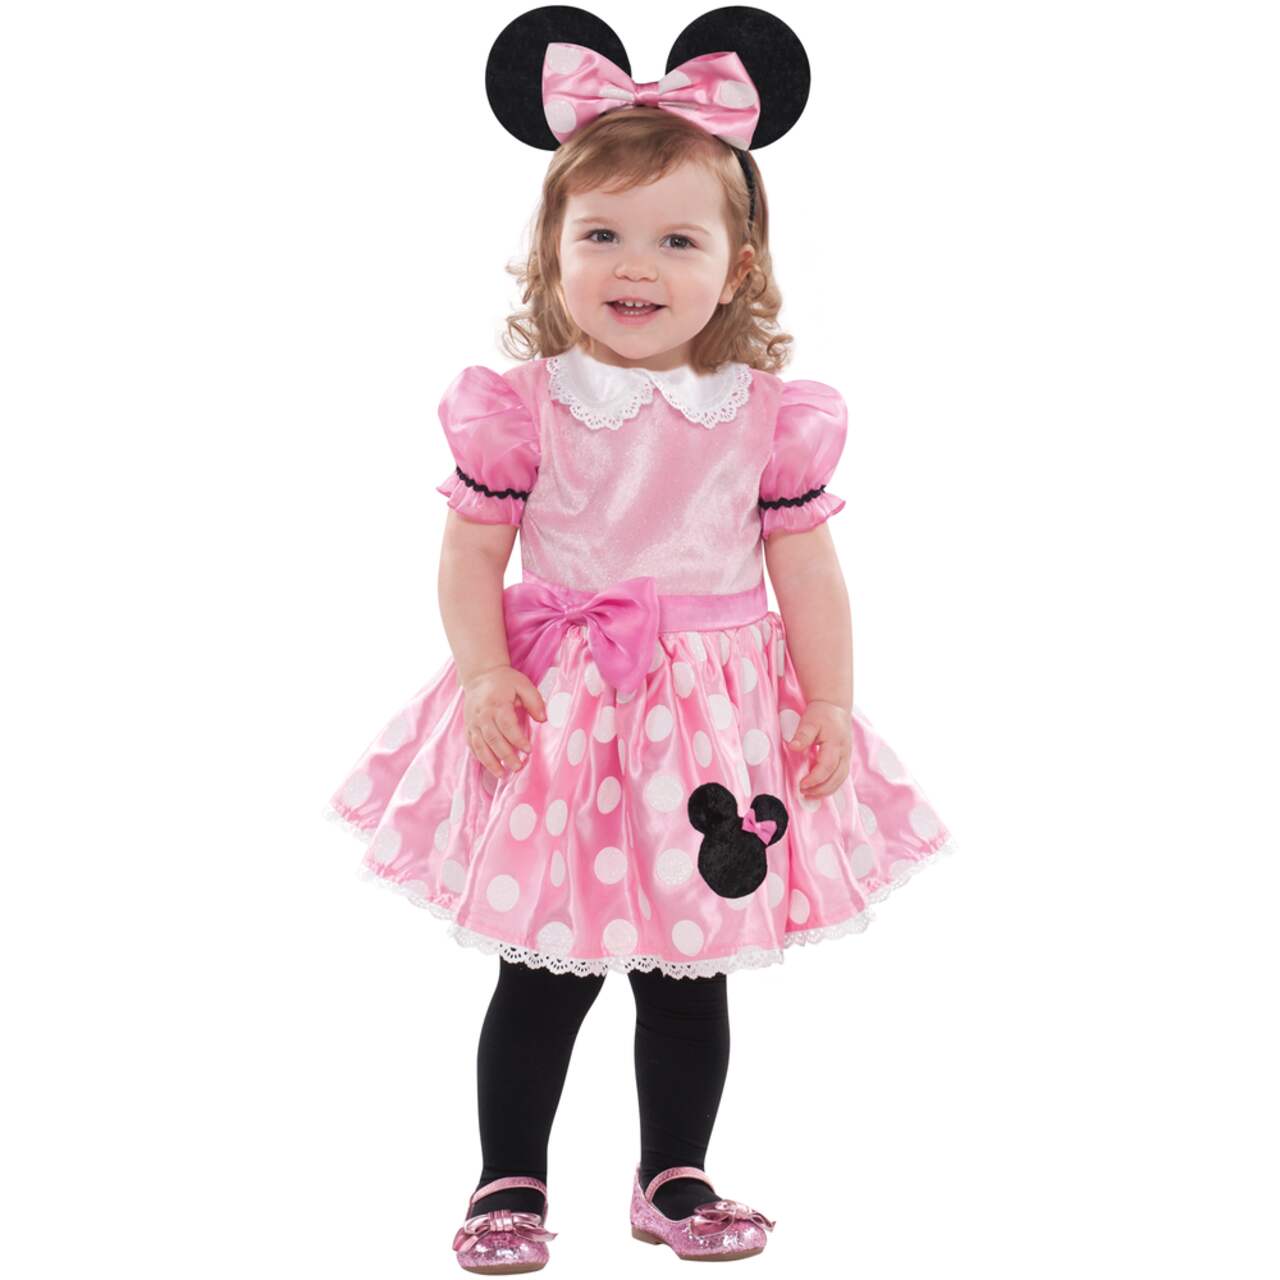 Costume Disney Minnie Mouse, bébés, robe rose/blanc avec bandeau